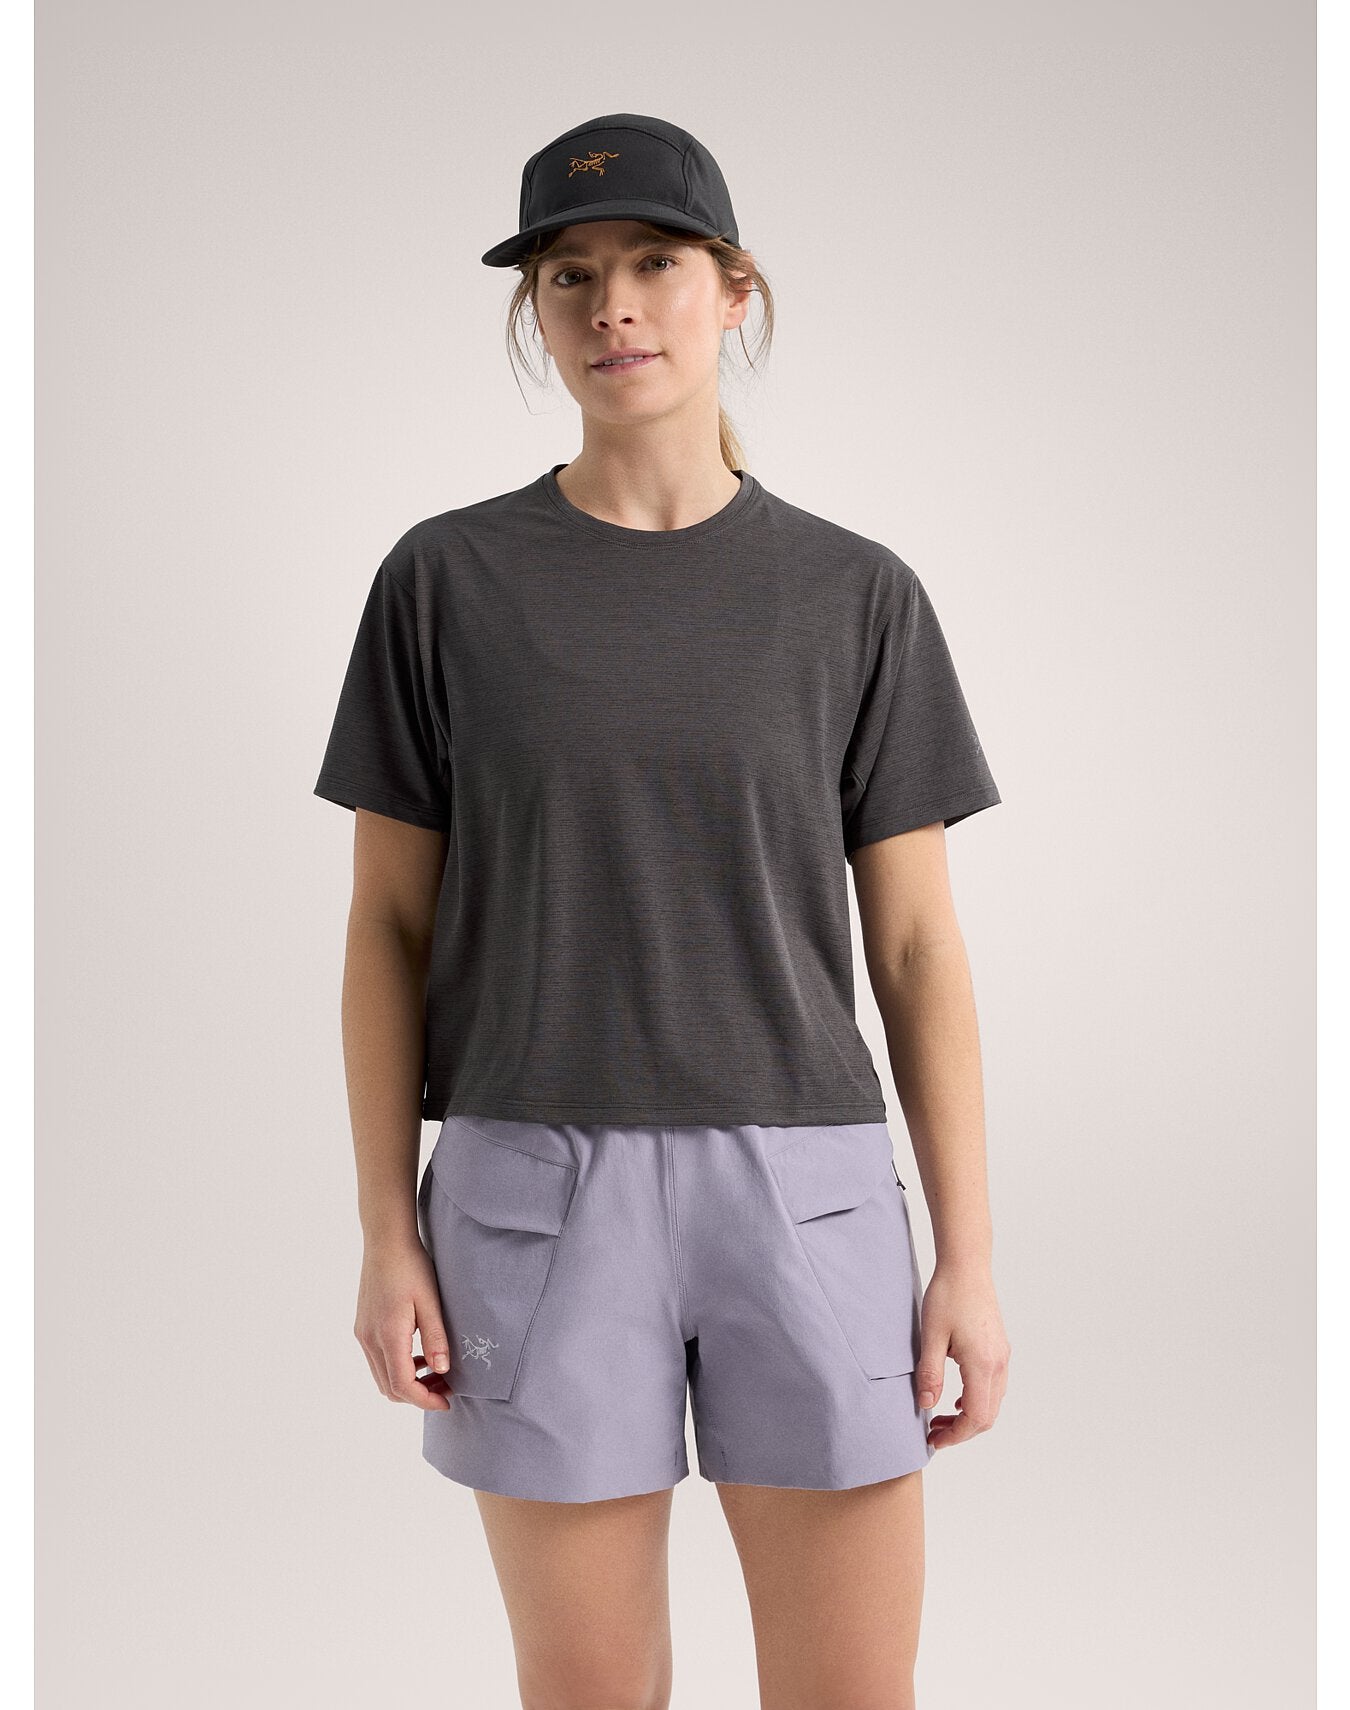 Arc'teryx Women's Taema Crop Short Sleeve Shirt